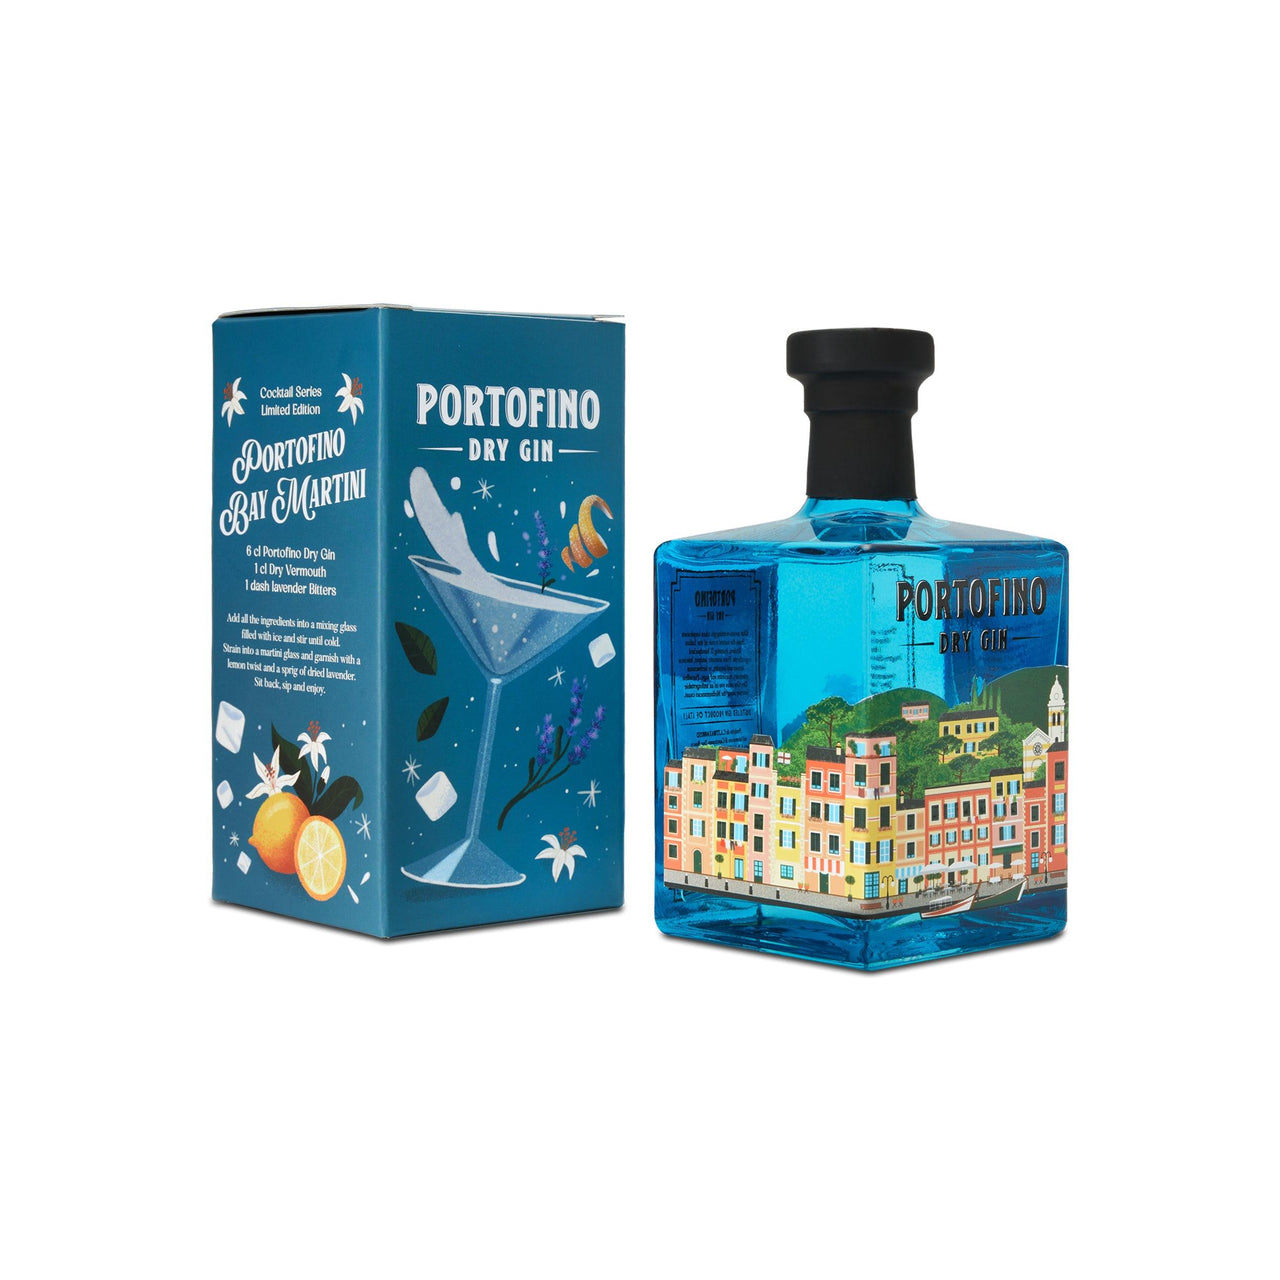 PORTOFINO DRY GIN 500 ml COCKTAIL EDIZIONE LIMITATA - Portofino Dry Gin